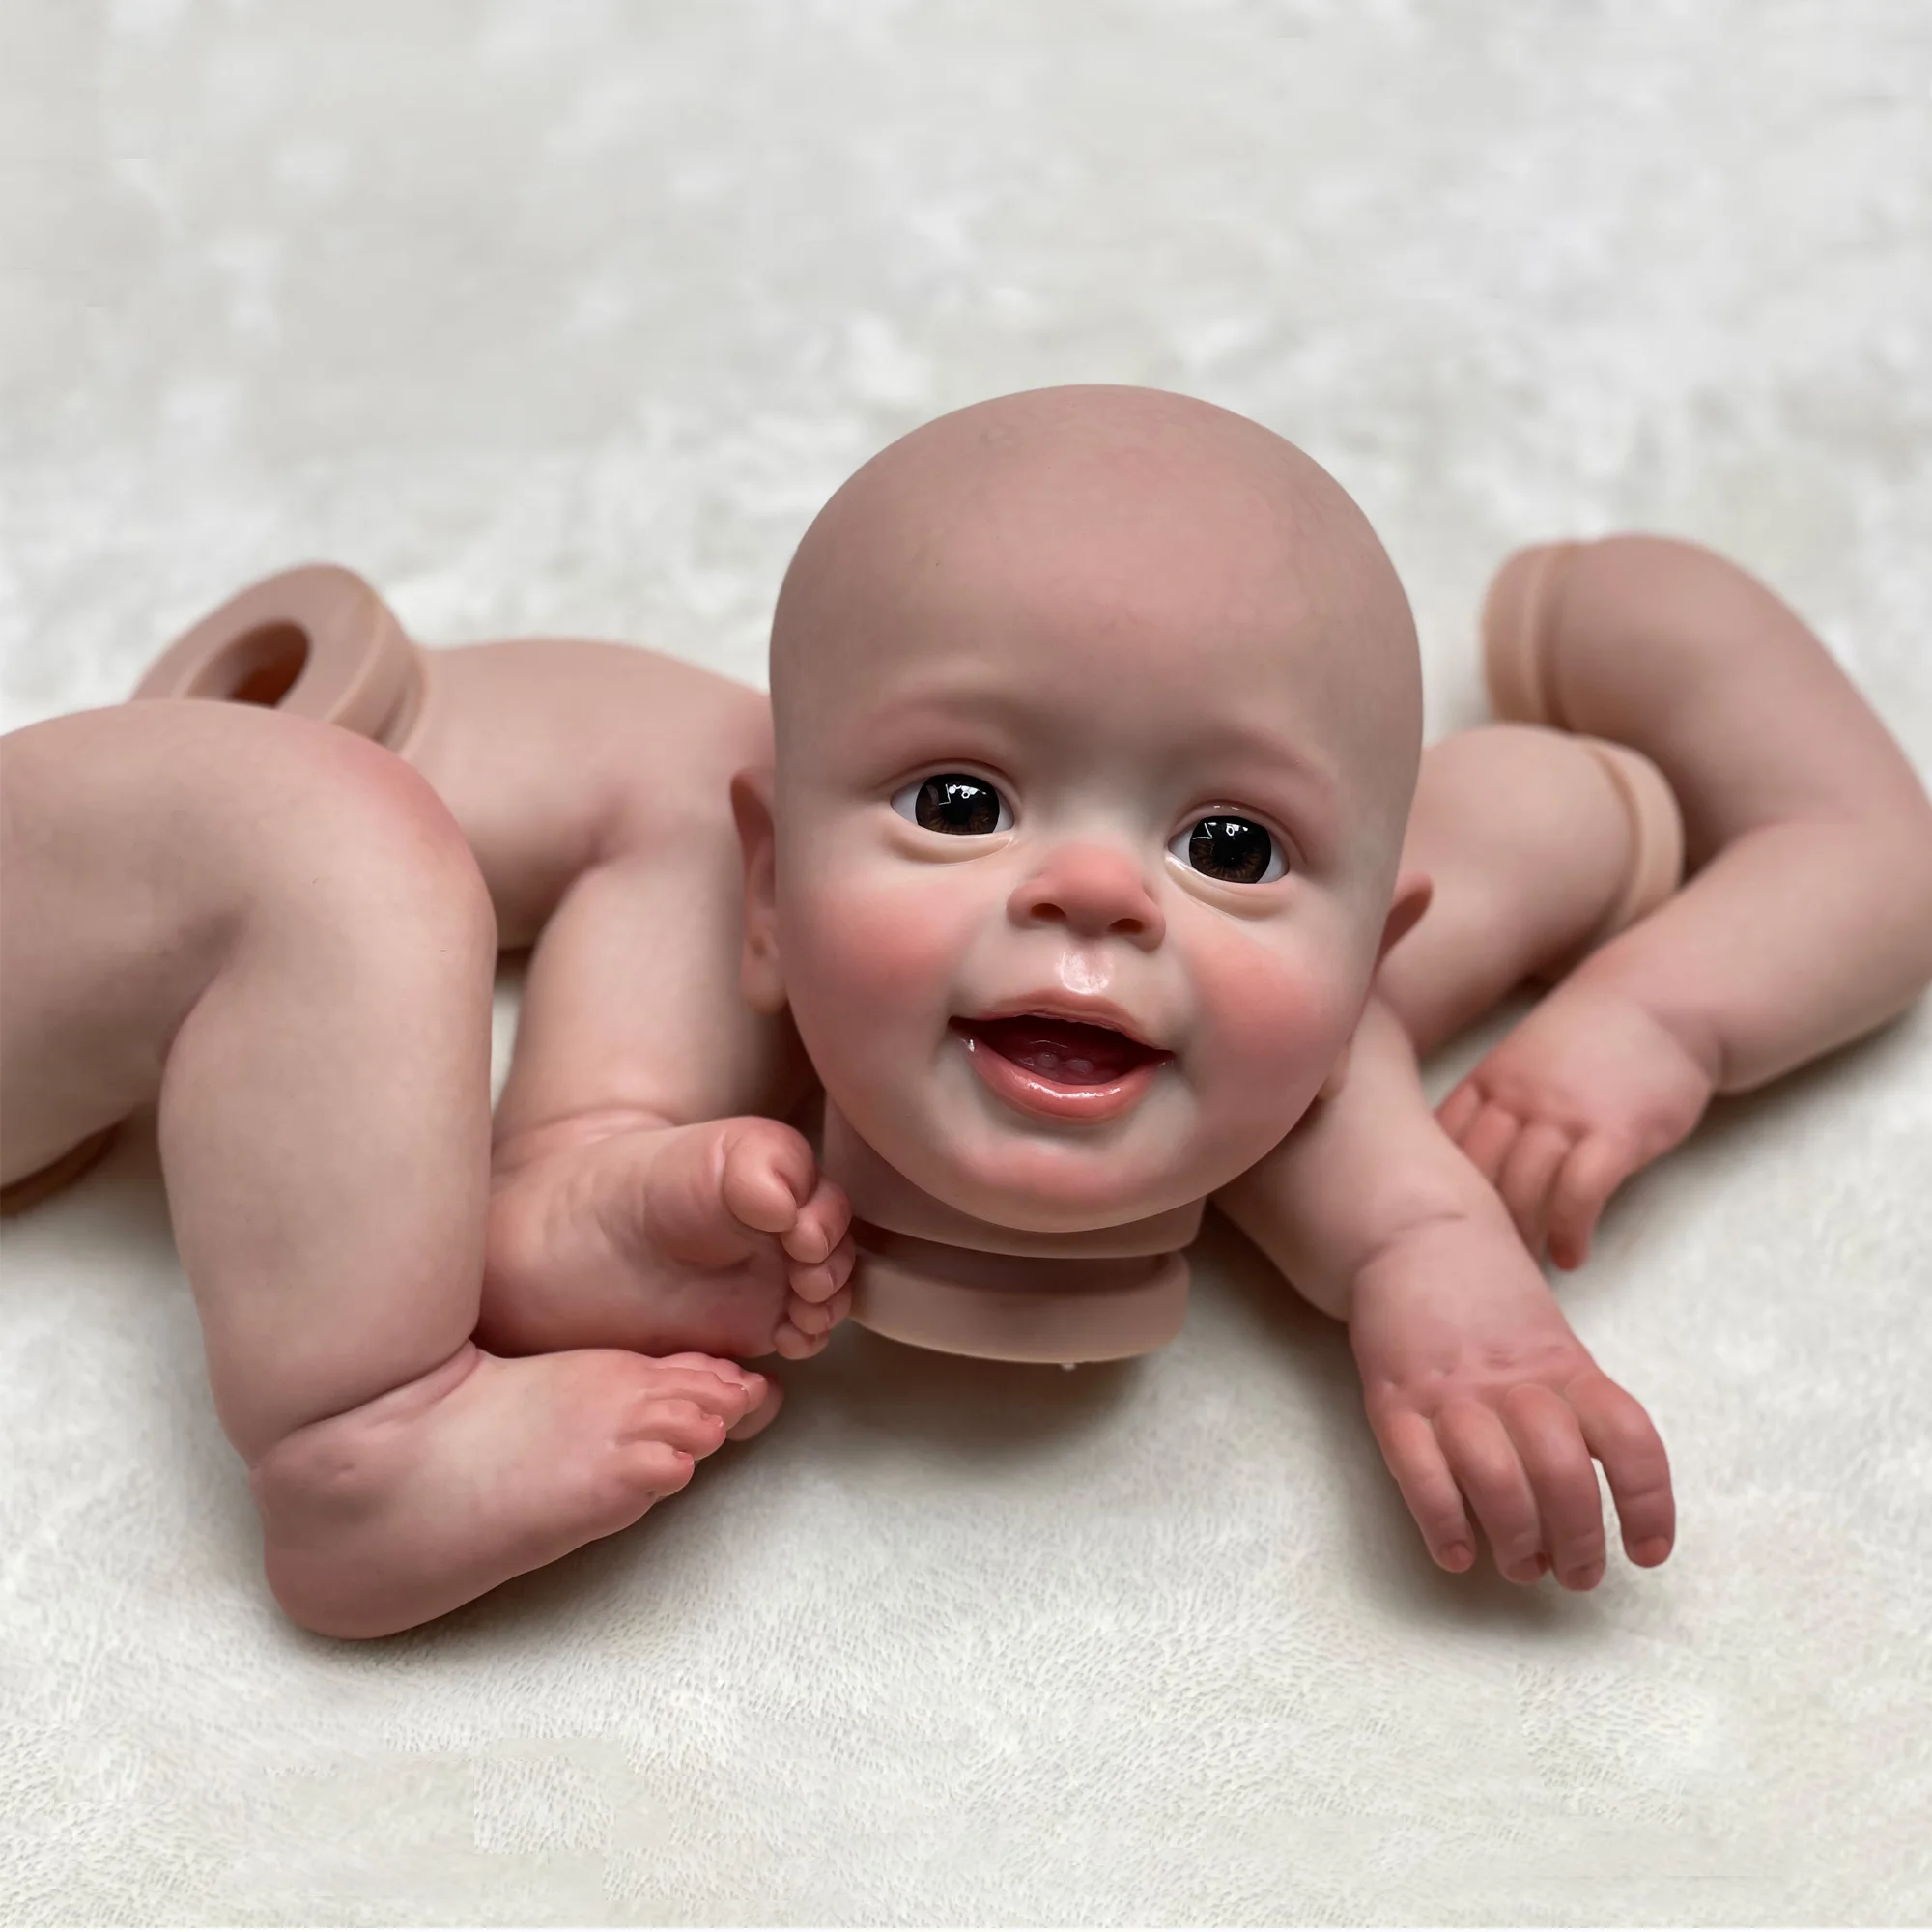 Solid Silicone Reborn Doll, Bebe Doll, pode beber leite, xixi, tomar banho,  macio, 35 cm - AliExpress